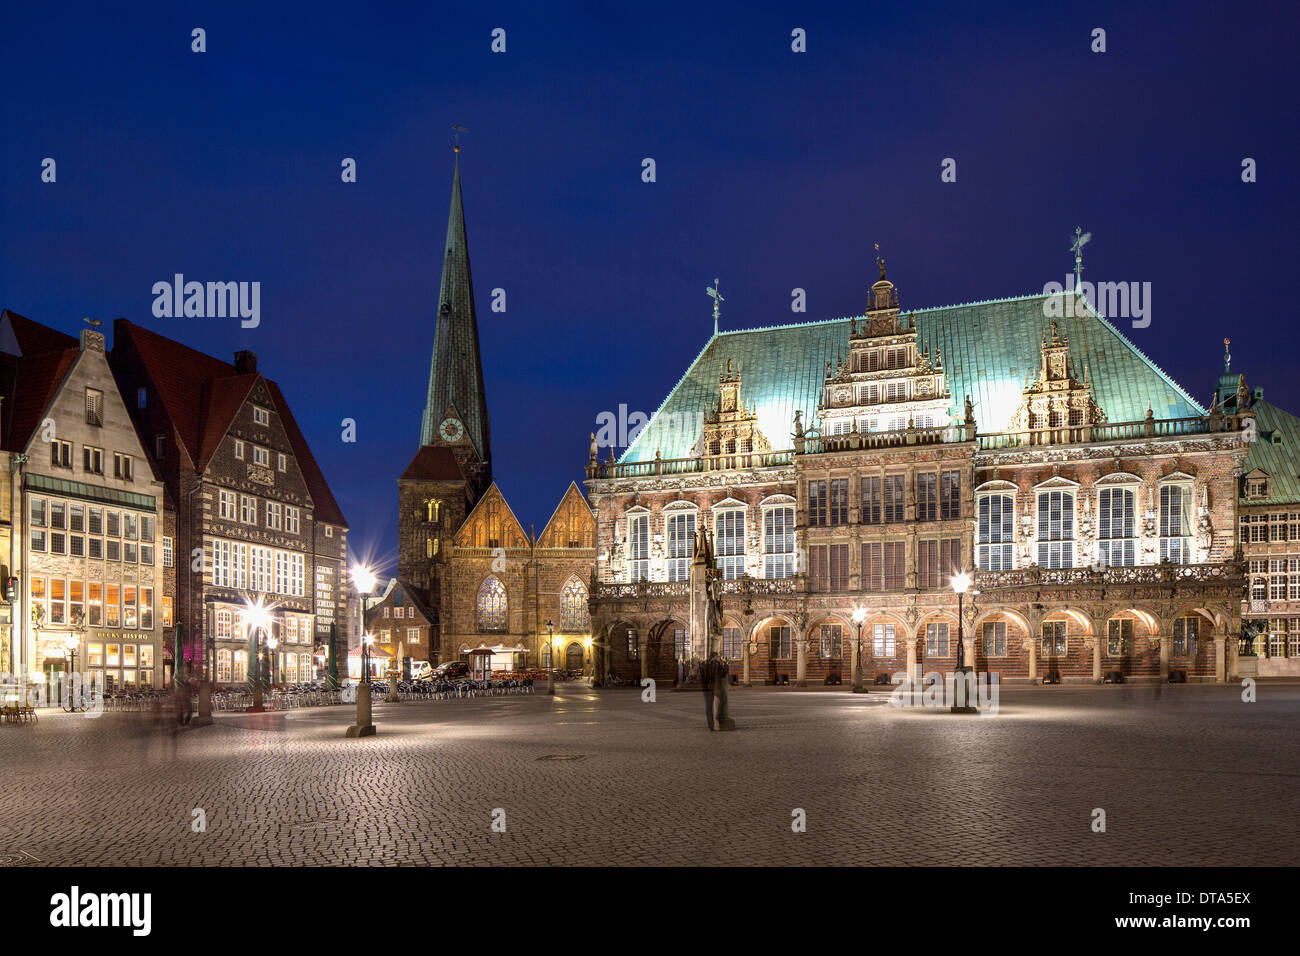 Hôtel de ville de Brême, Weser-renaissance, Site du patrimoine culturel mondial de l'UNESCO, l'église Notre Dame sur la gauche, Brême, Allemagne Banque D'Images